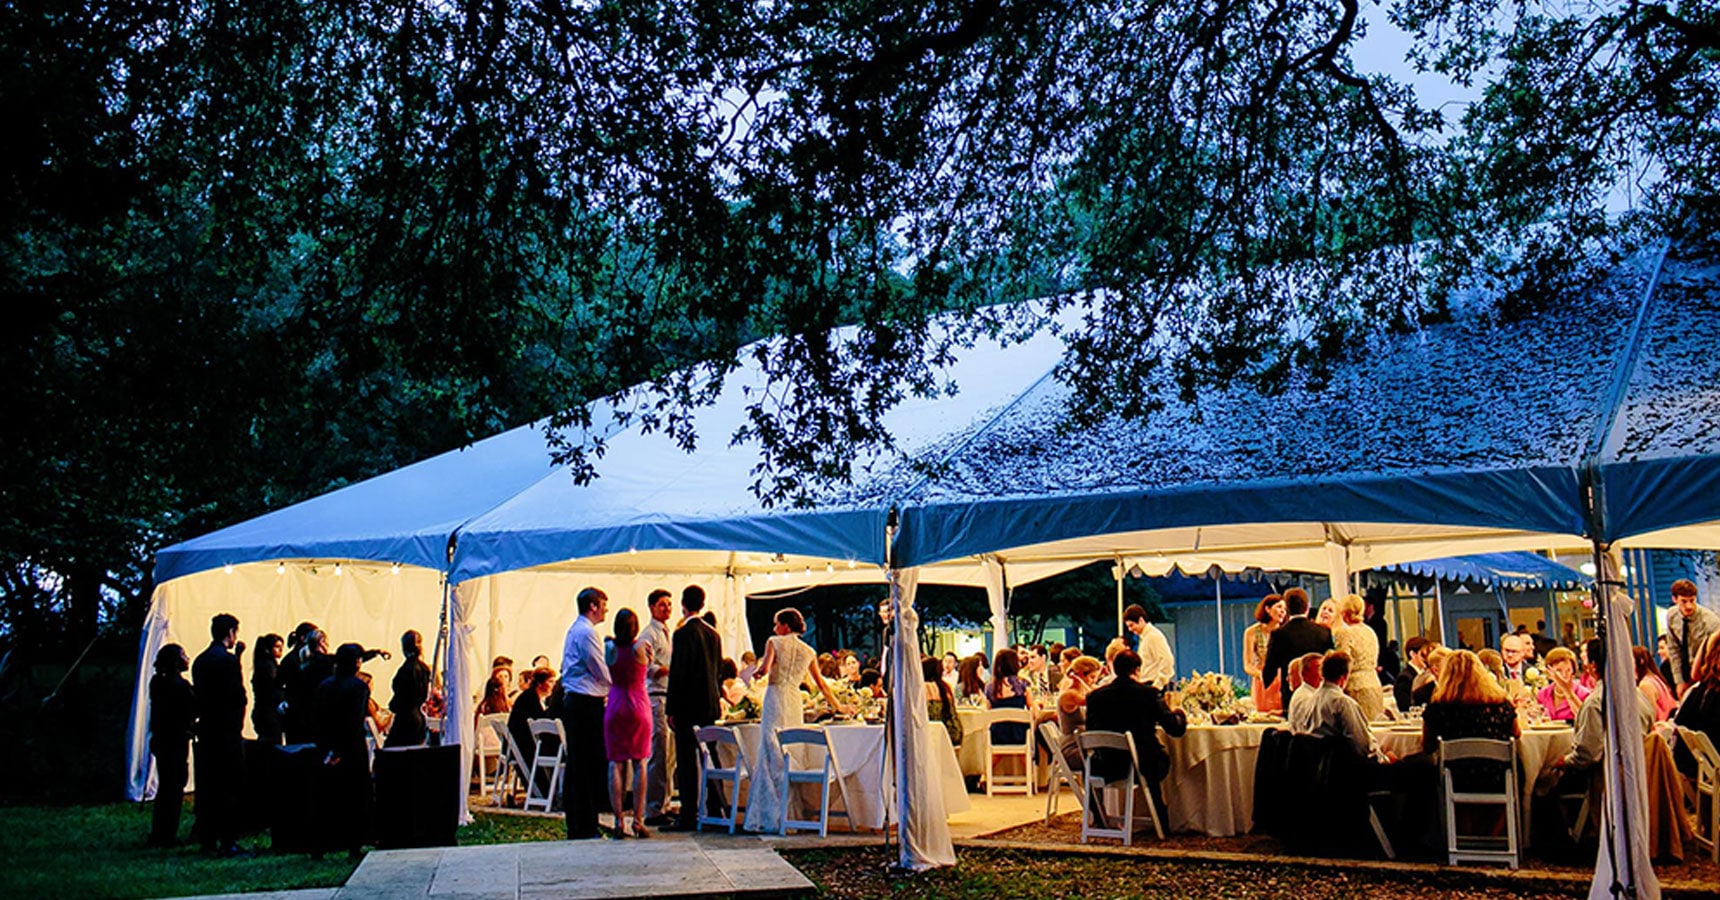 Outdoor tented wedding reception